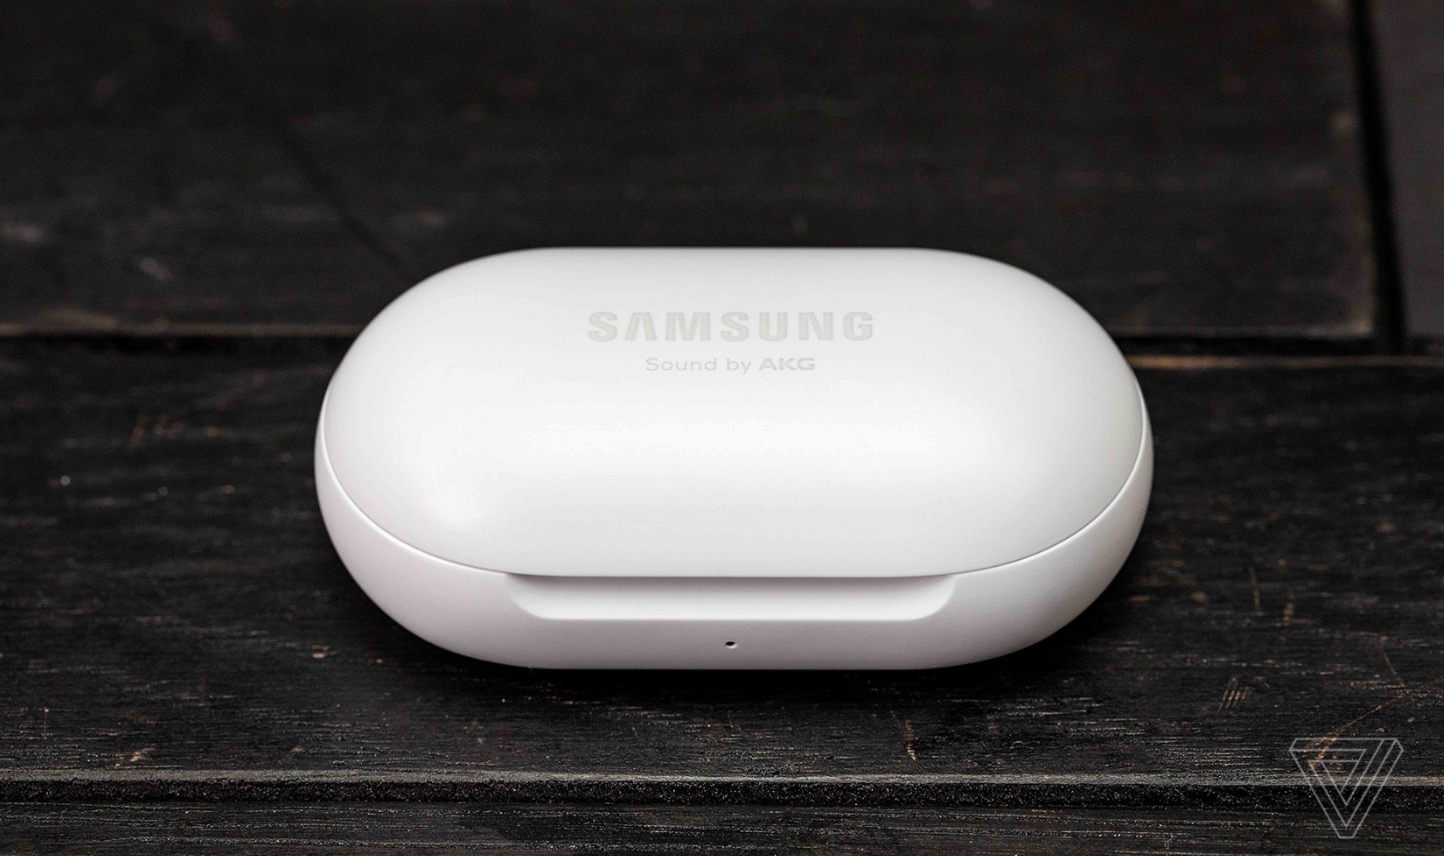 Samsung ra mắt Galaxy
Buds với giá giá 3 triệu đồng: Âm thanh được AKG tinh chỉnh
và có thể làm điều mà AirPods không thể